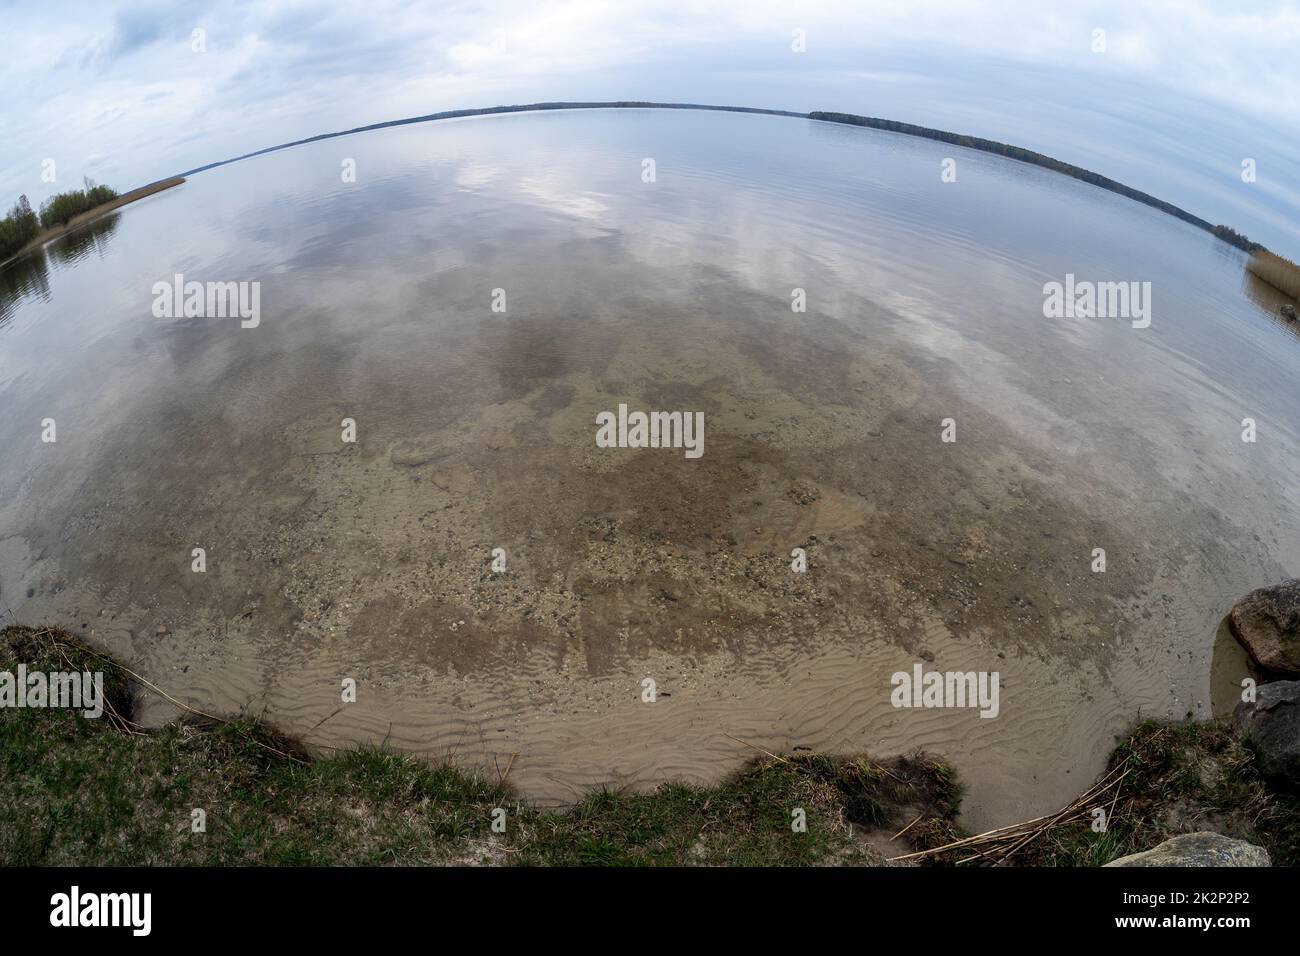 La surface d'eau calme par temps nuageux. Objectif fisheye. Banque D'Images